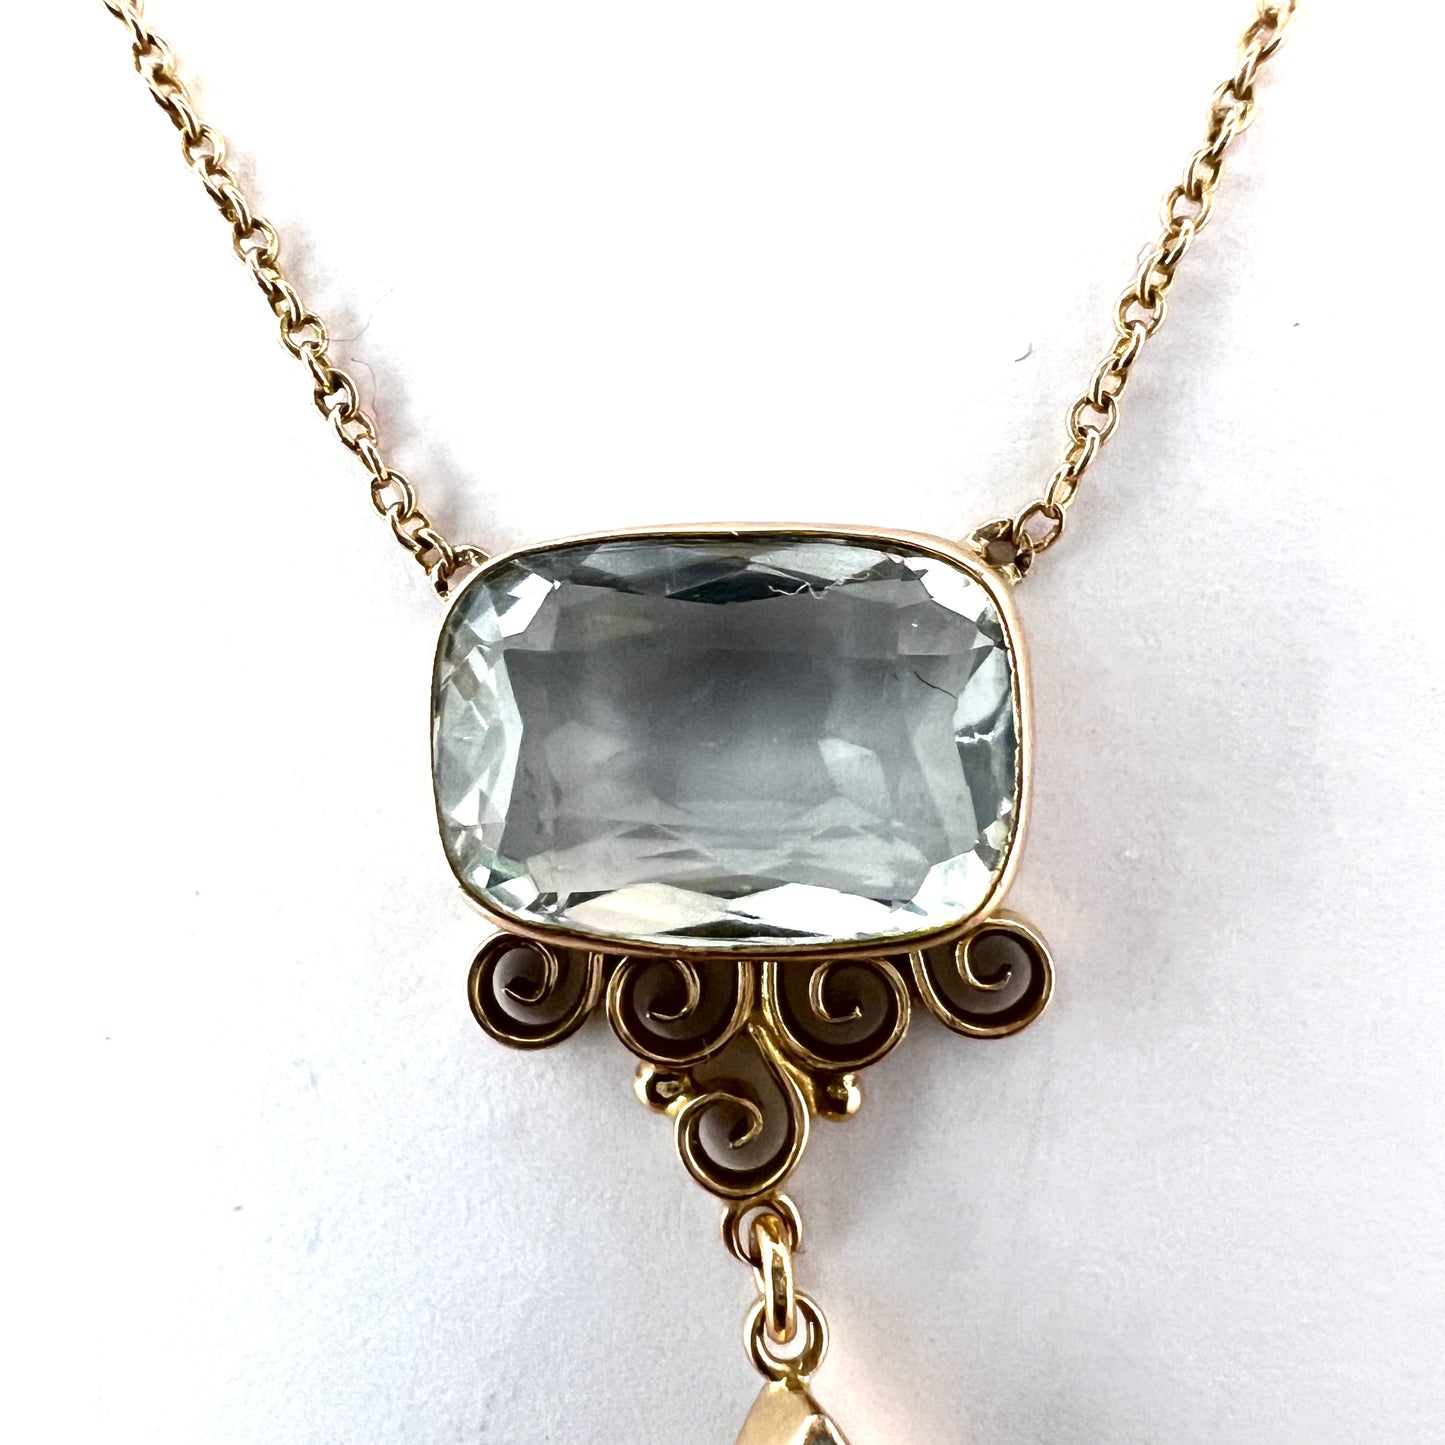 Antique c 1910s 14k Gold Pale Blue Paste Pendant Necklace.